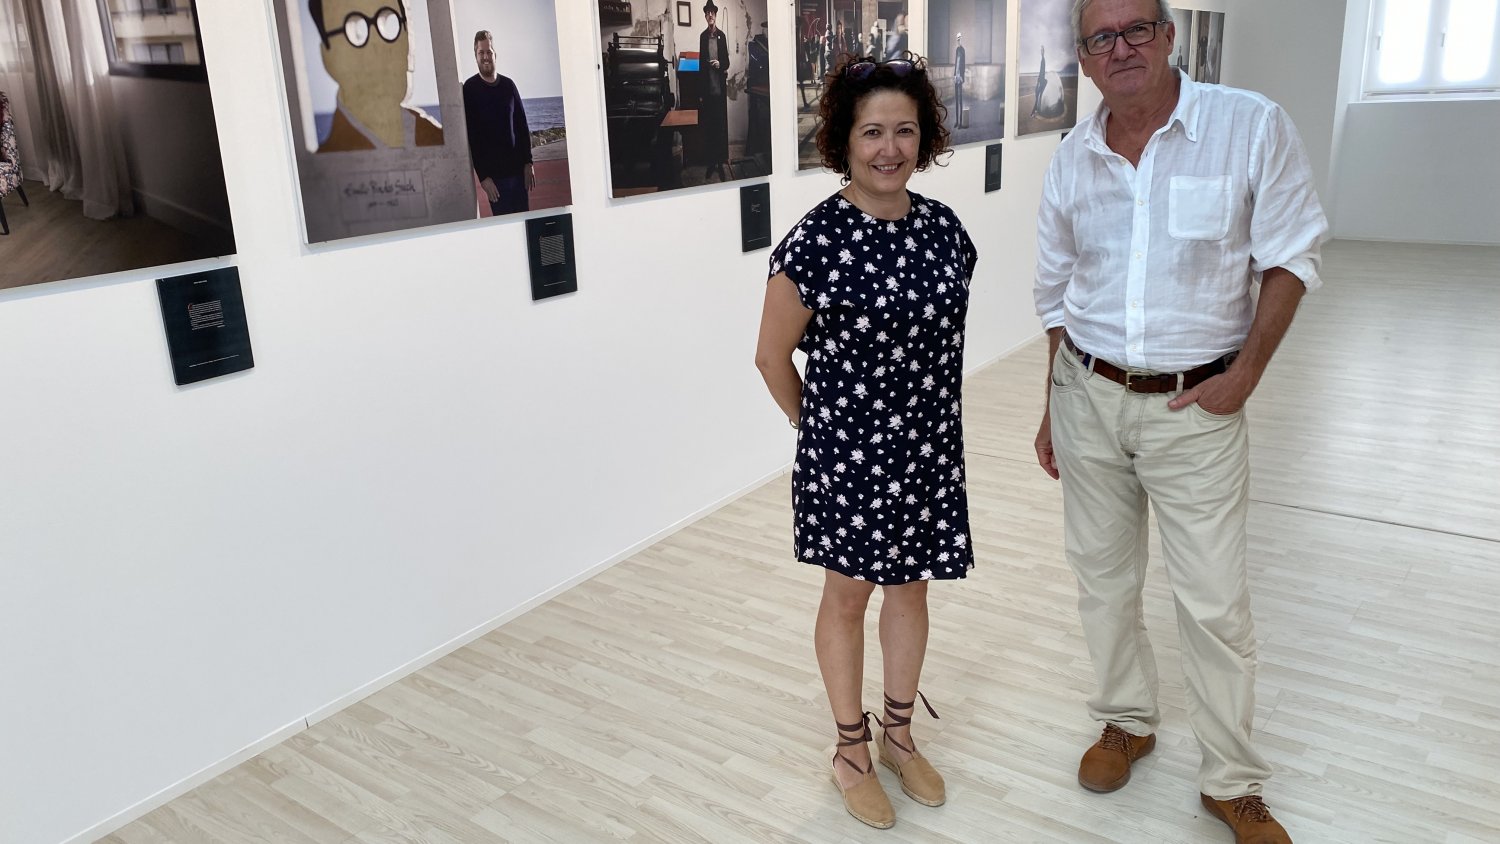 Fotografía y poesía se funden en el CAC de Vélez-Málaga con una exposición de Paco Negre